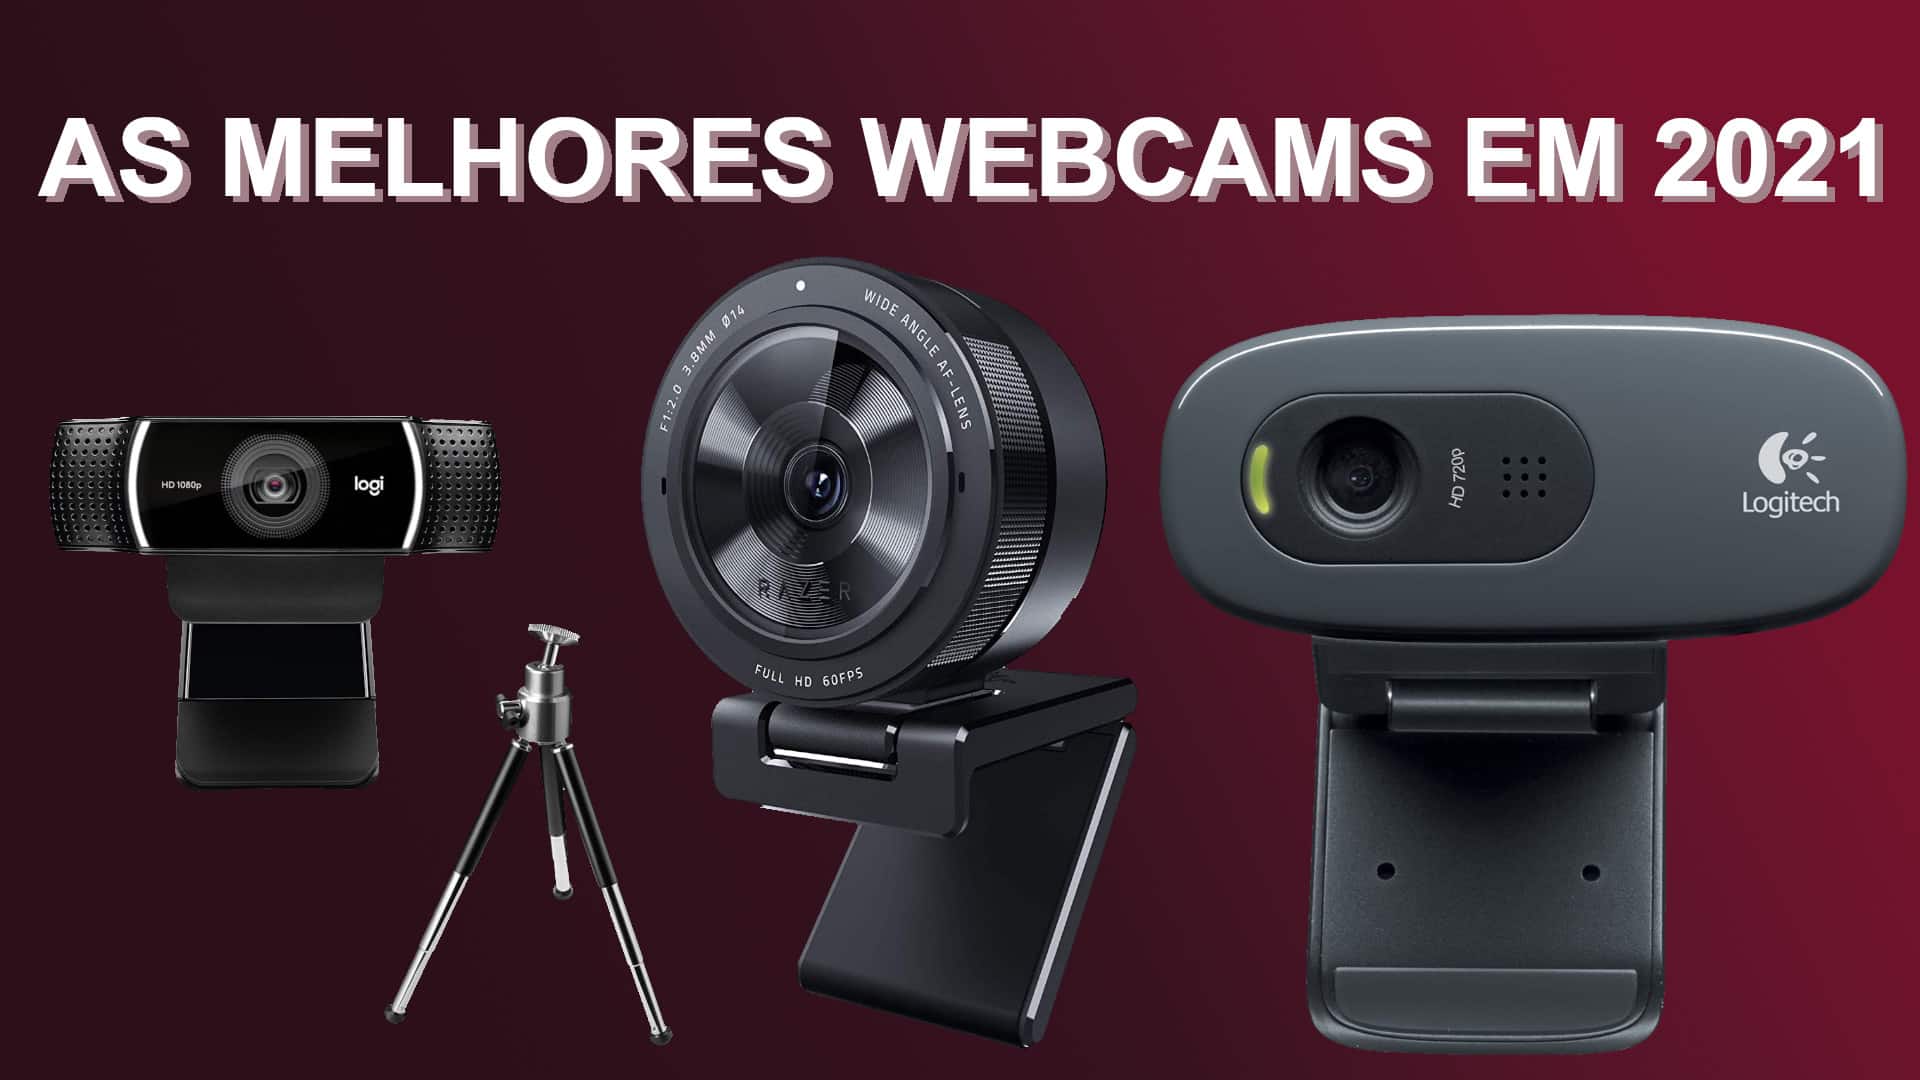 As melhores webcams em 2021 | abff8315 capa | married games sorteio | sorteio | melhores webcams